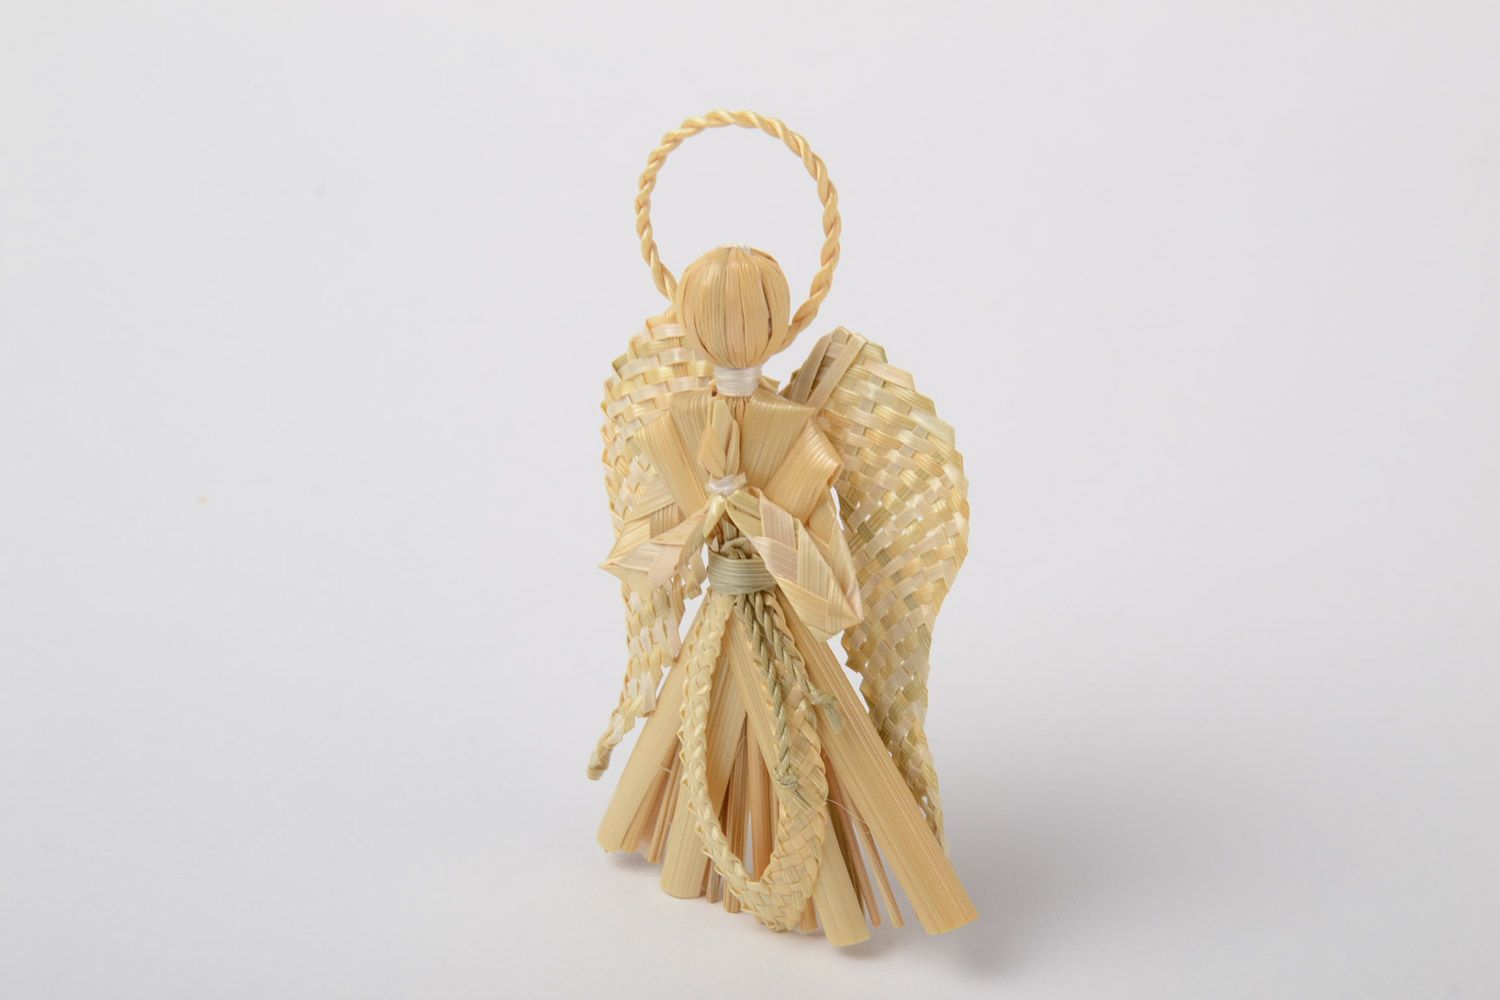 Ангел-хранитель из соломы плетеный вручную интерьерная подвеска в эко стиле фото 2